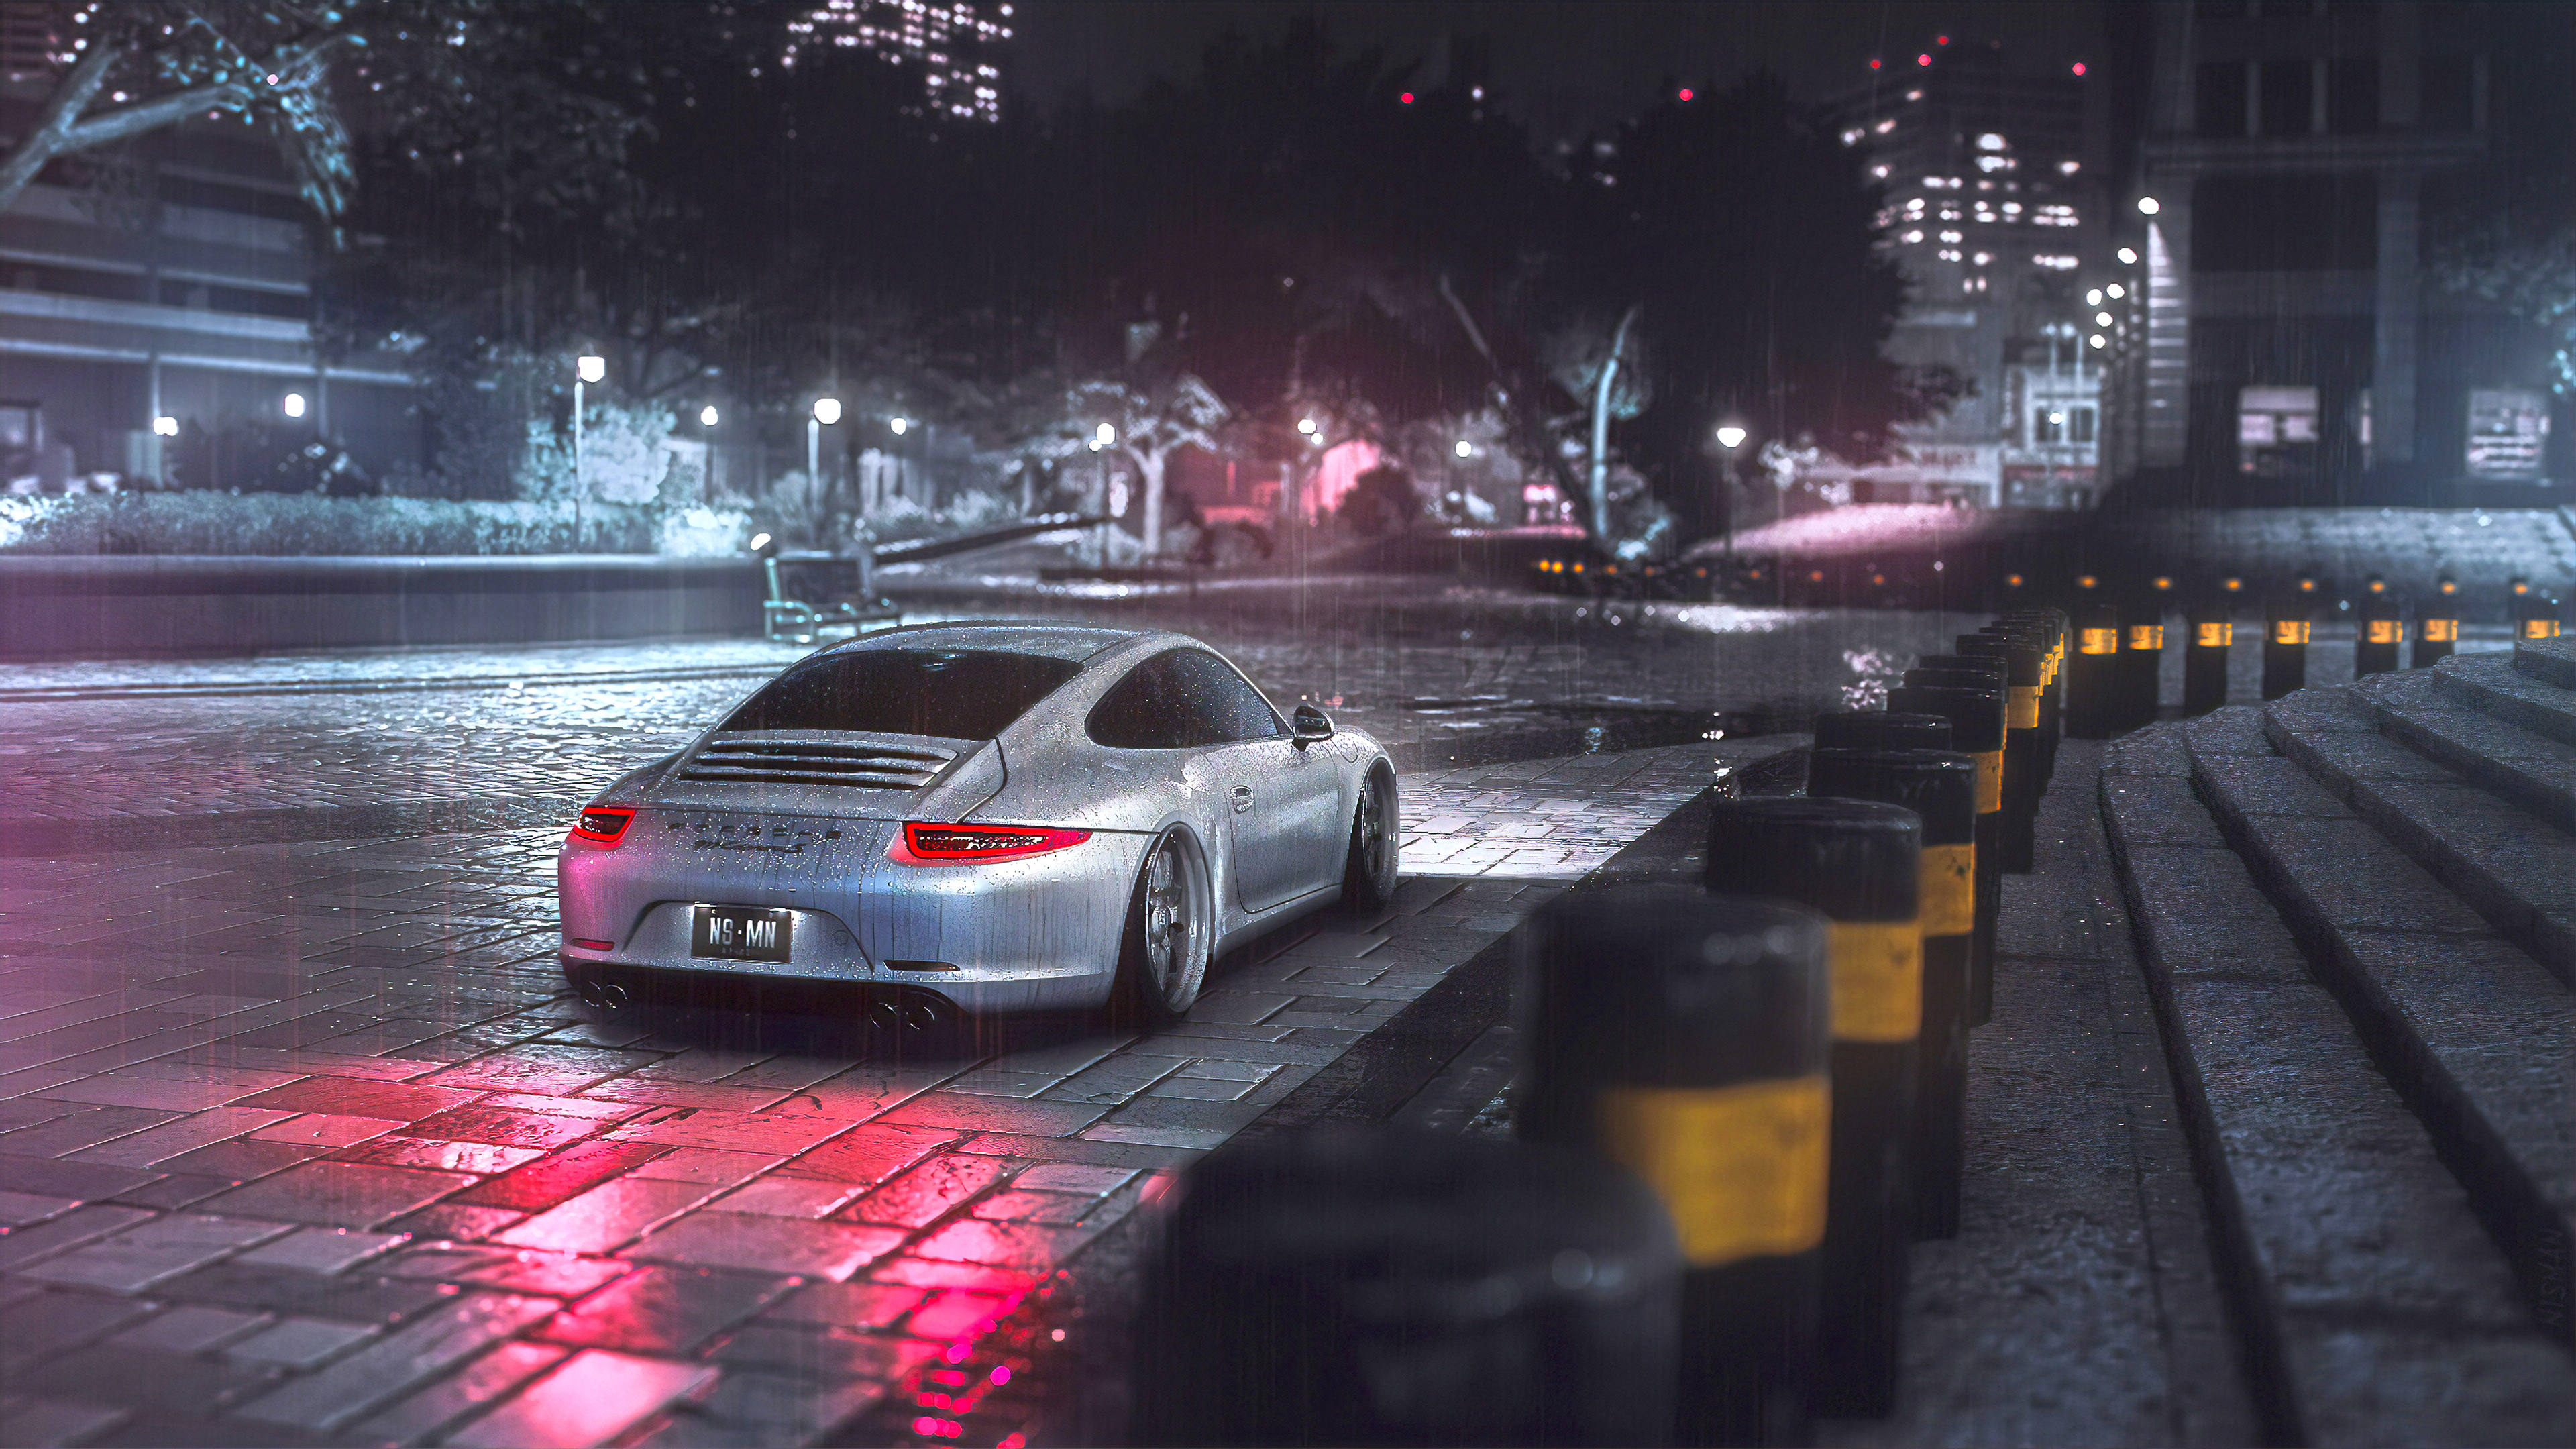 Need for Speed (2015) 4k Ultra HD Wallpaper by Alexander Nisman